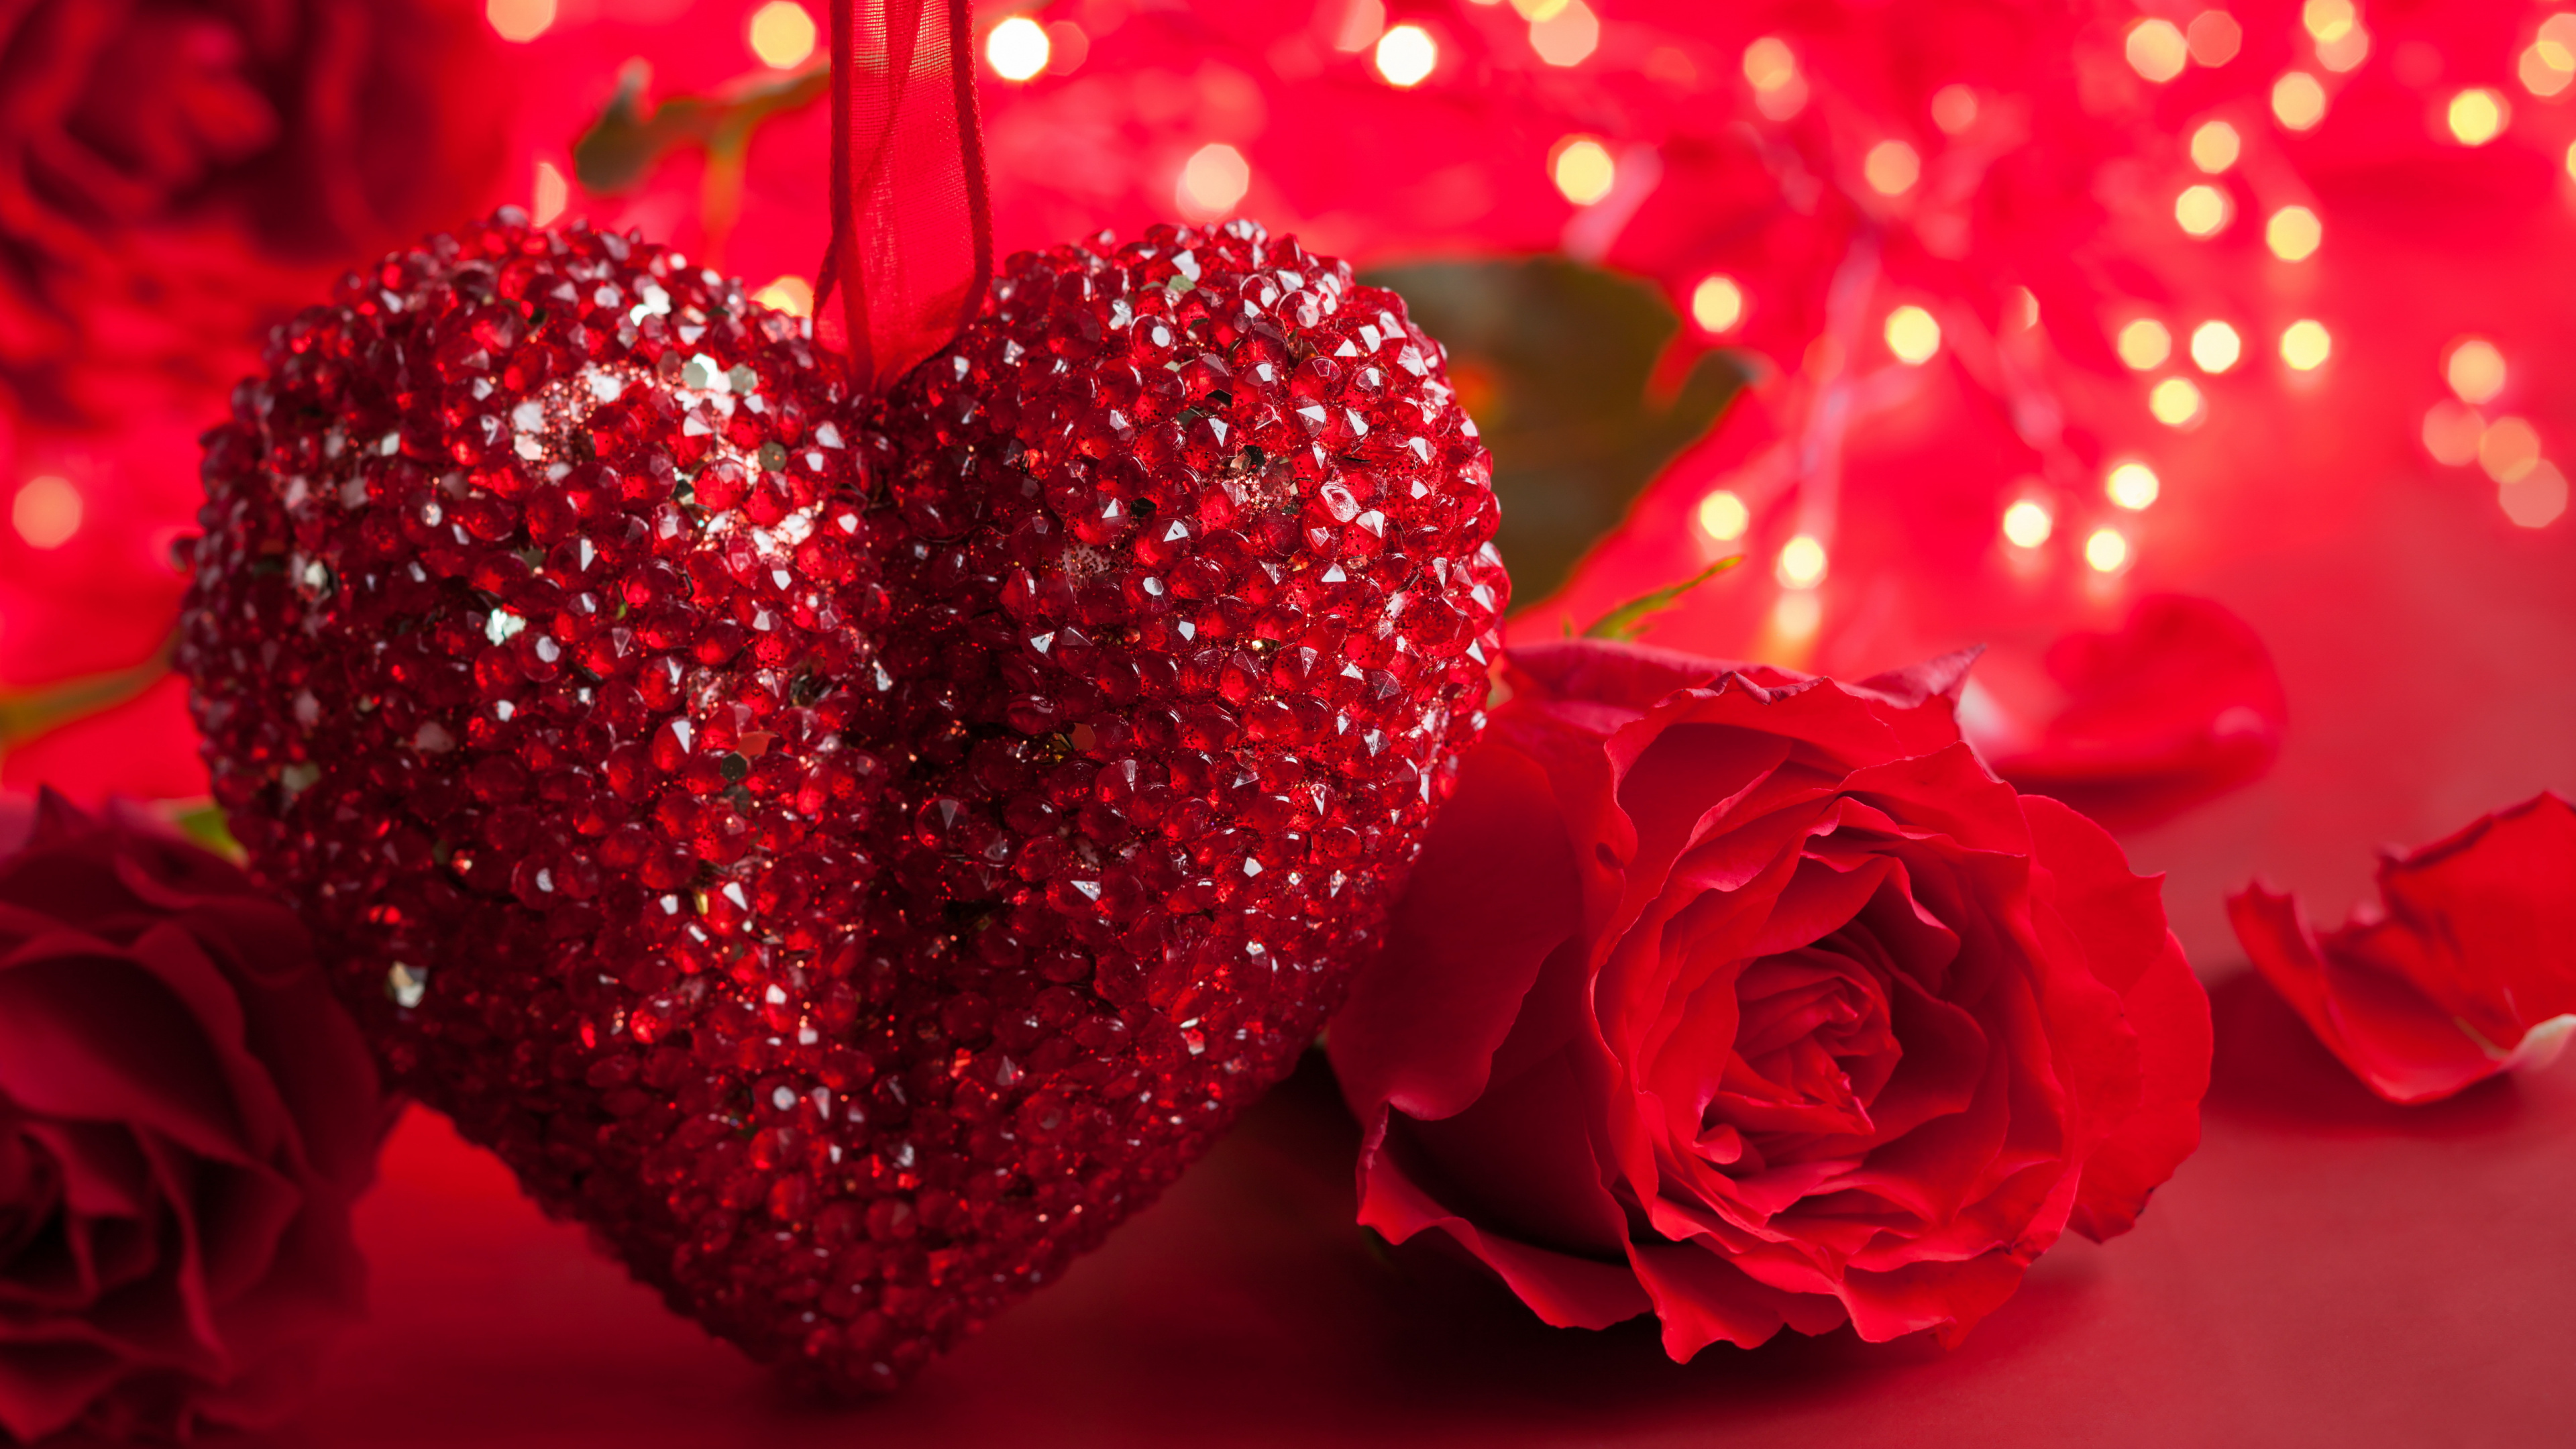 浪漫, 心脏, 红色的, 爱情, 友谊 壁纸 3840x2160 允许